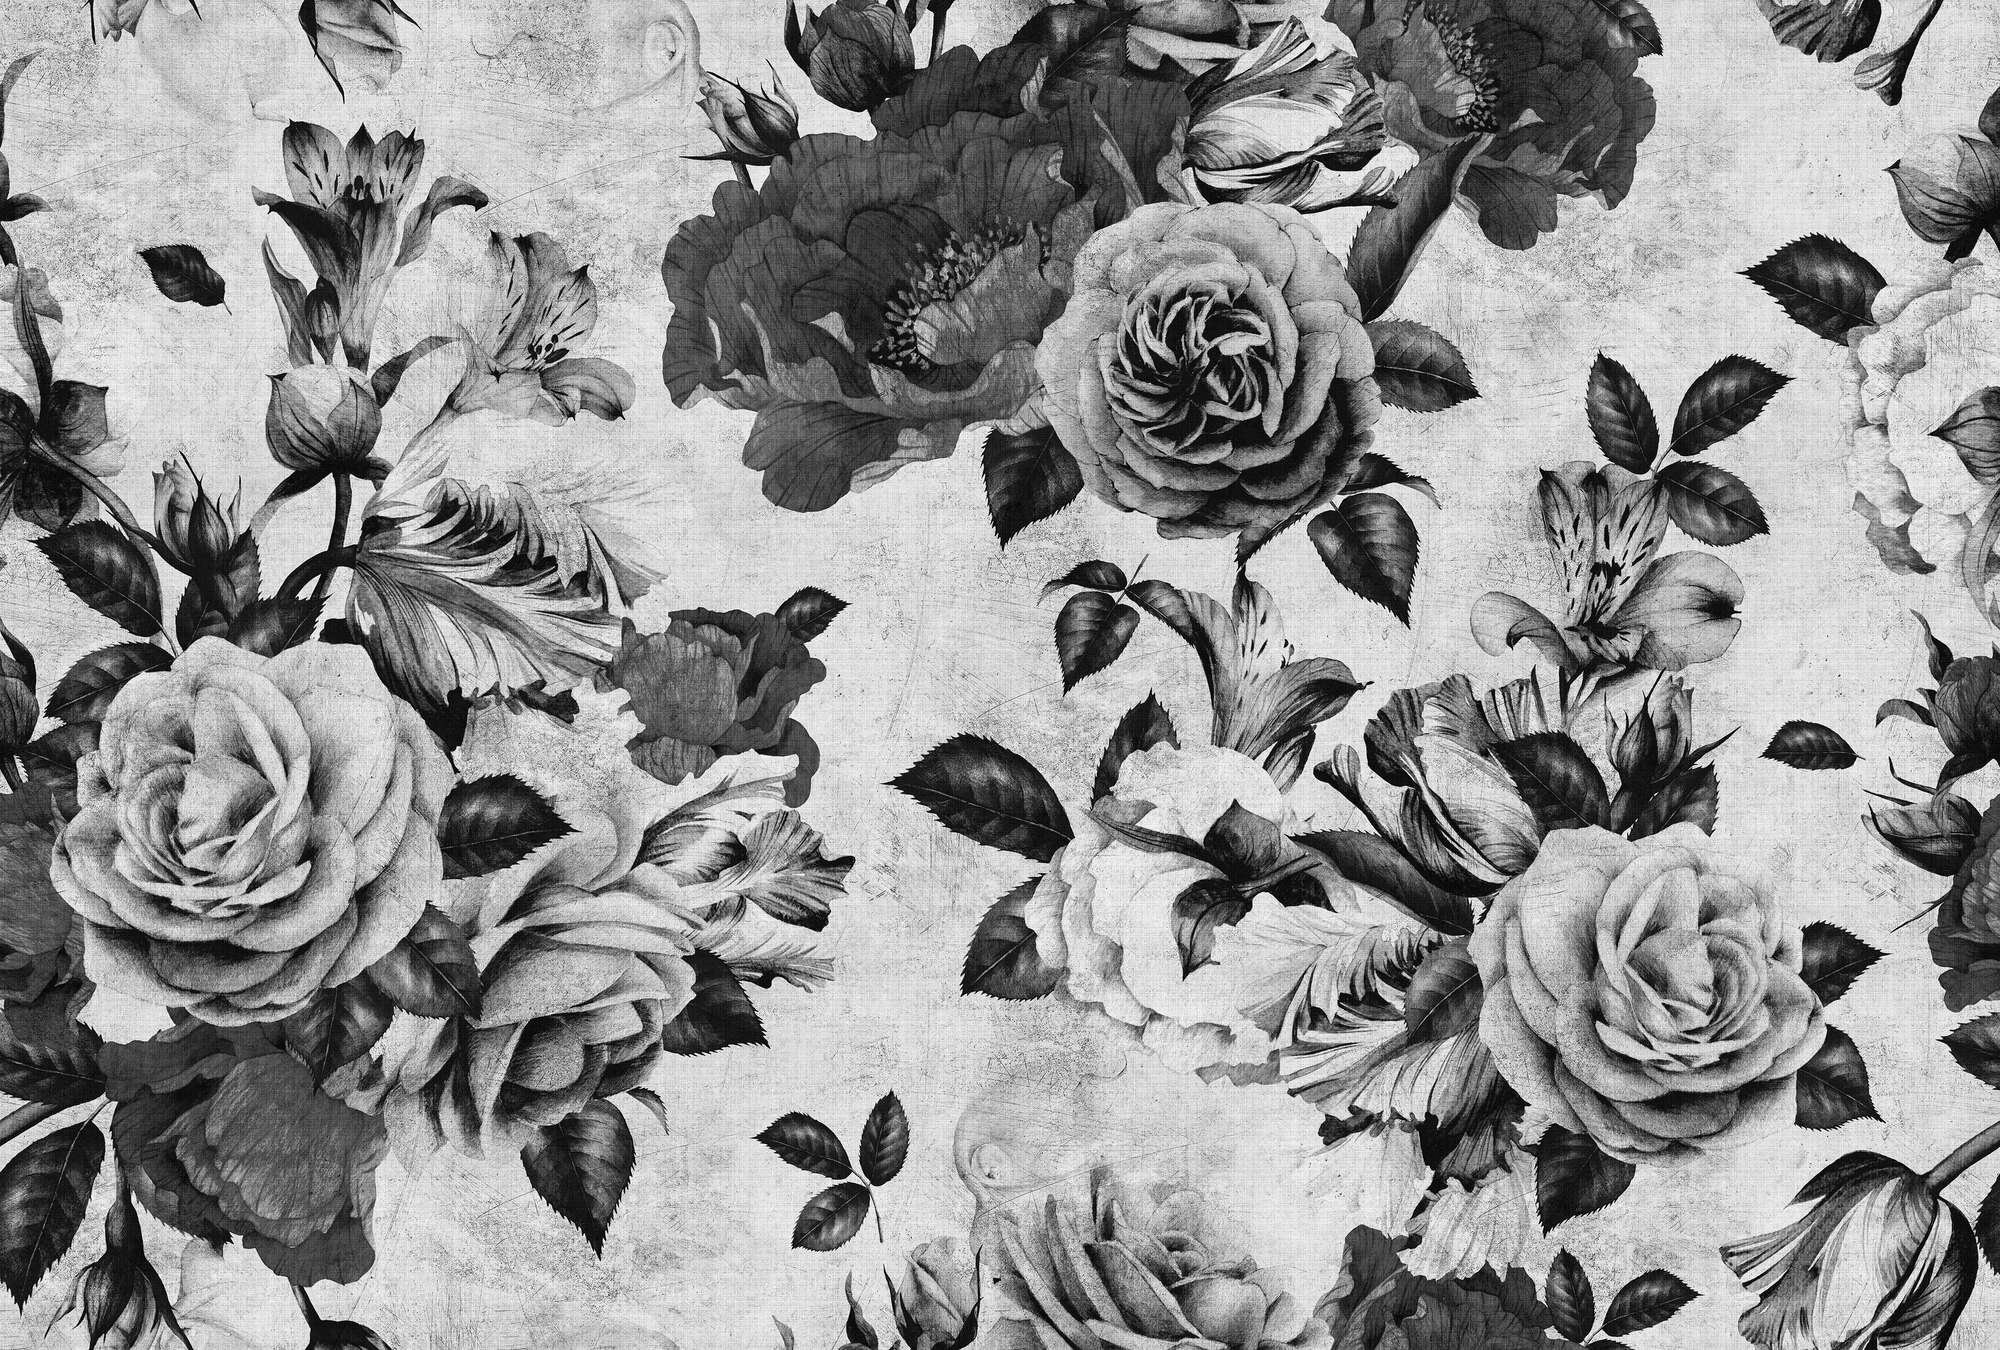             Rosa española 1 - Papel pintado Rosa con flores blancas y negras en estructura de lino natural - gris, negro | nácar liso
        